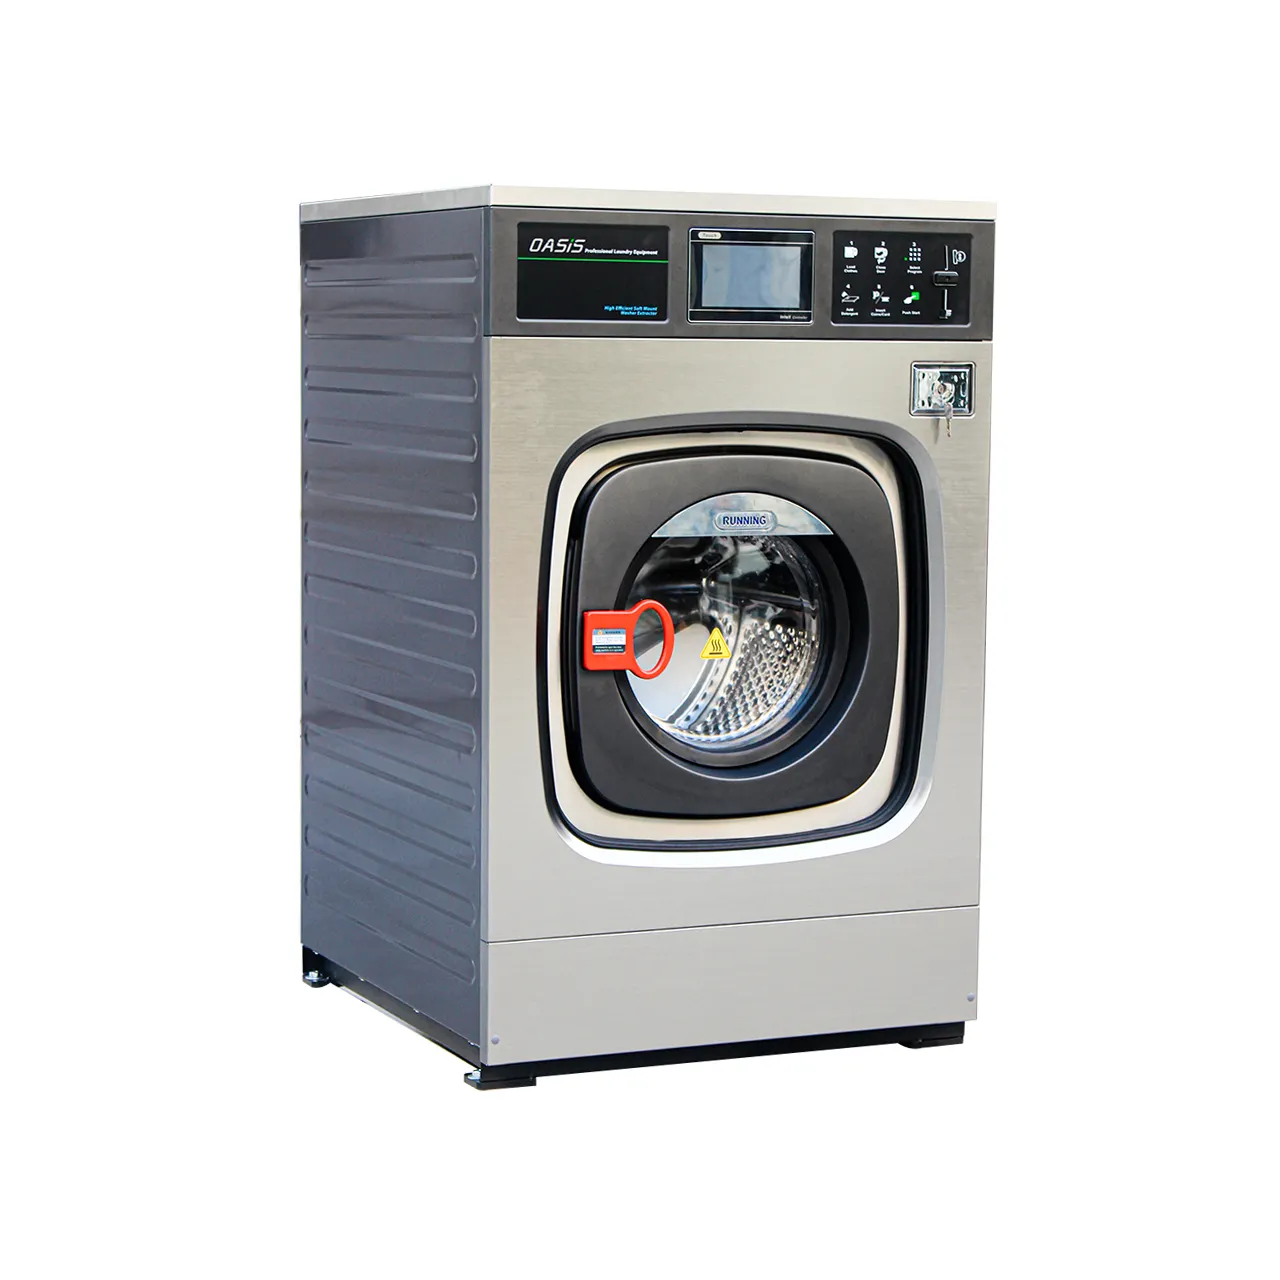 Migliori prestazioni 25Kg lavanderia industriale lavatrice Ce certificata commerciale lavaviti estrattore